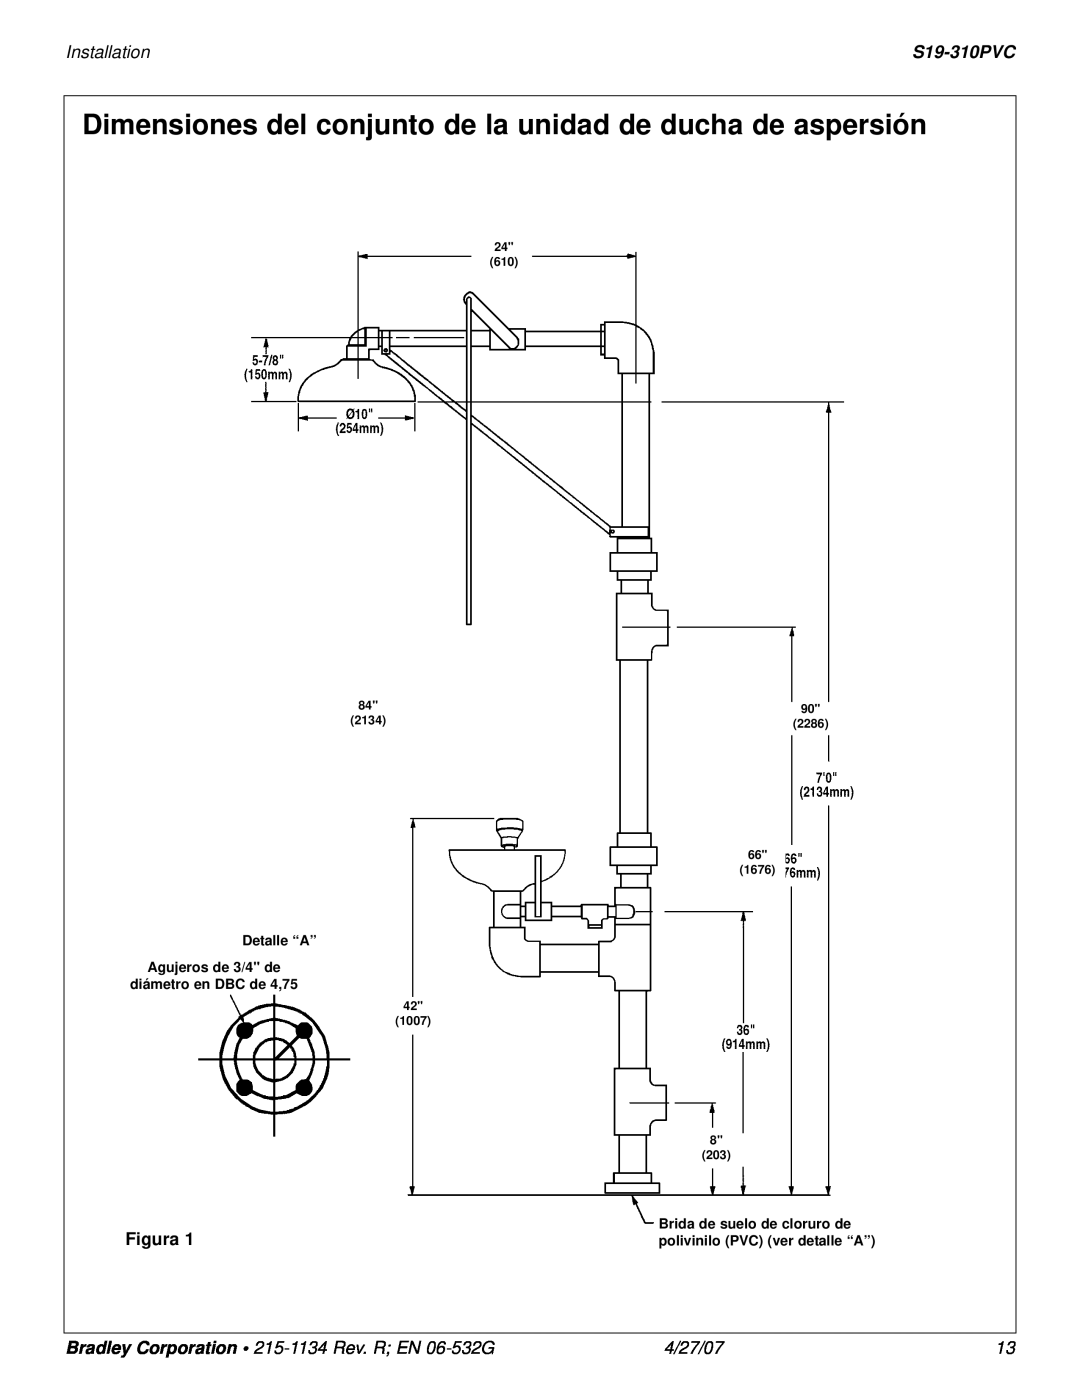 Bradley Smoker S19-310PVC Dimensiones del conjunto de la unidad de ducha de aspersión, Installation, Figura, 4/27/07, 2134 